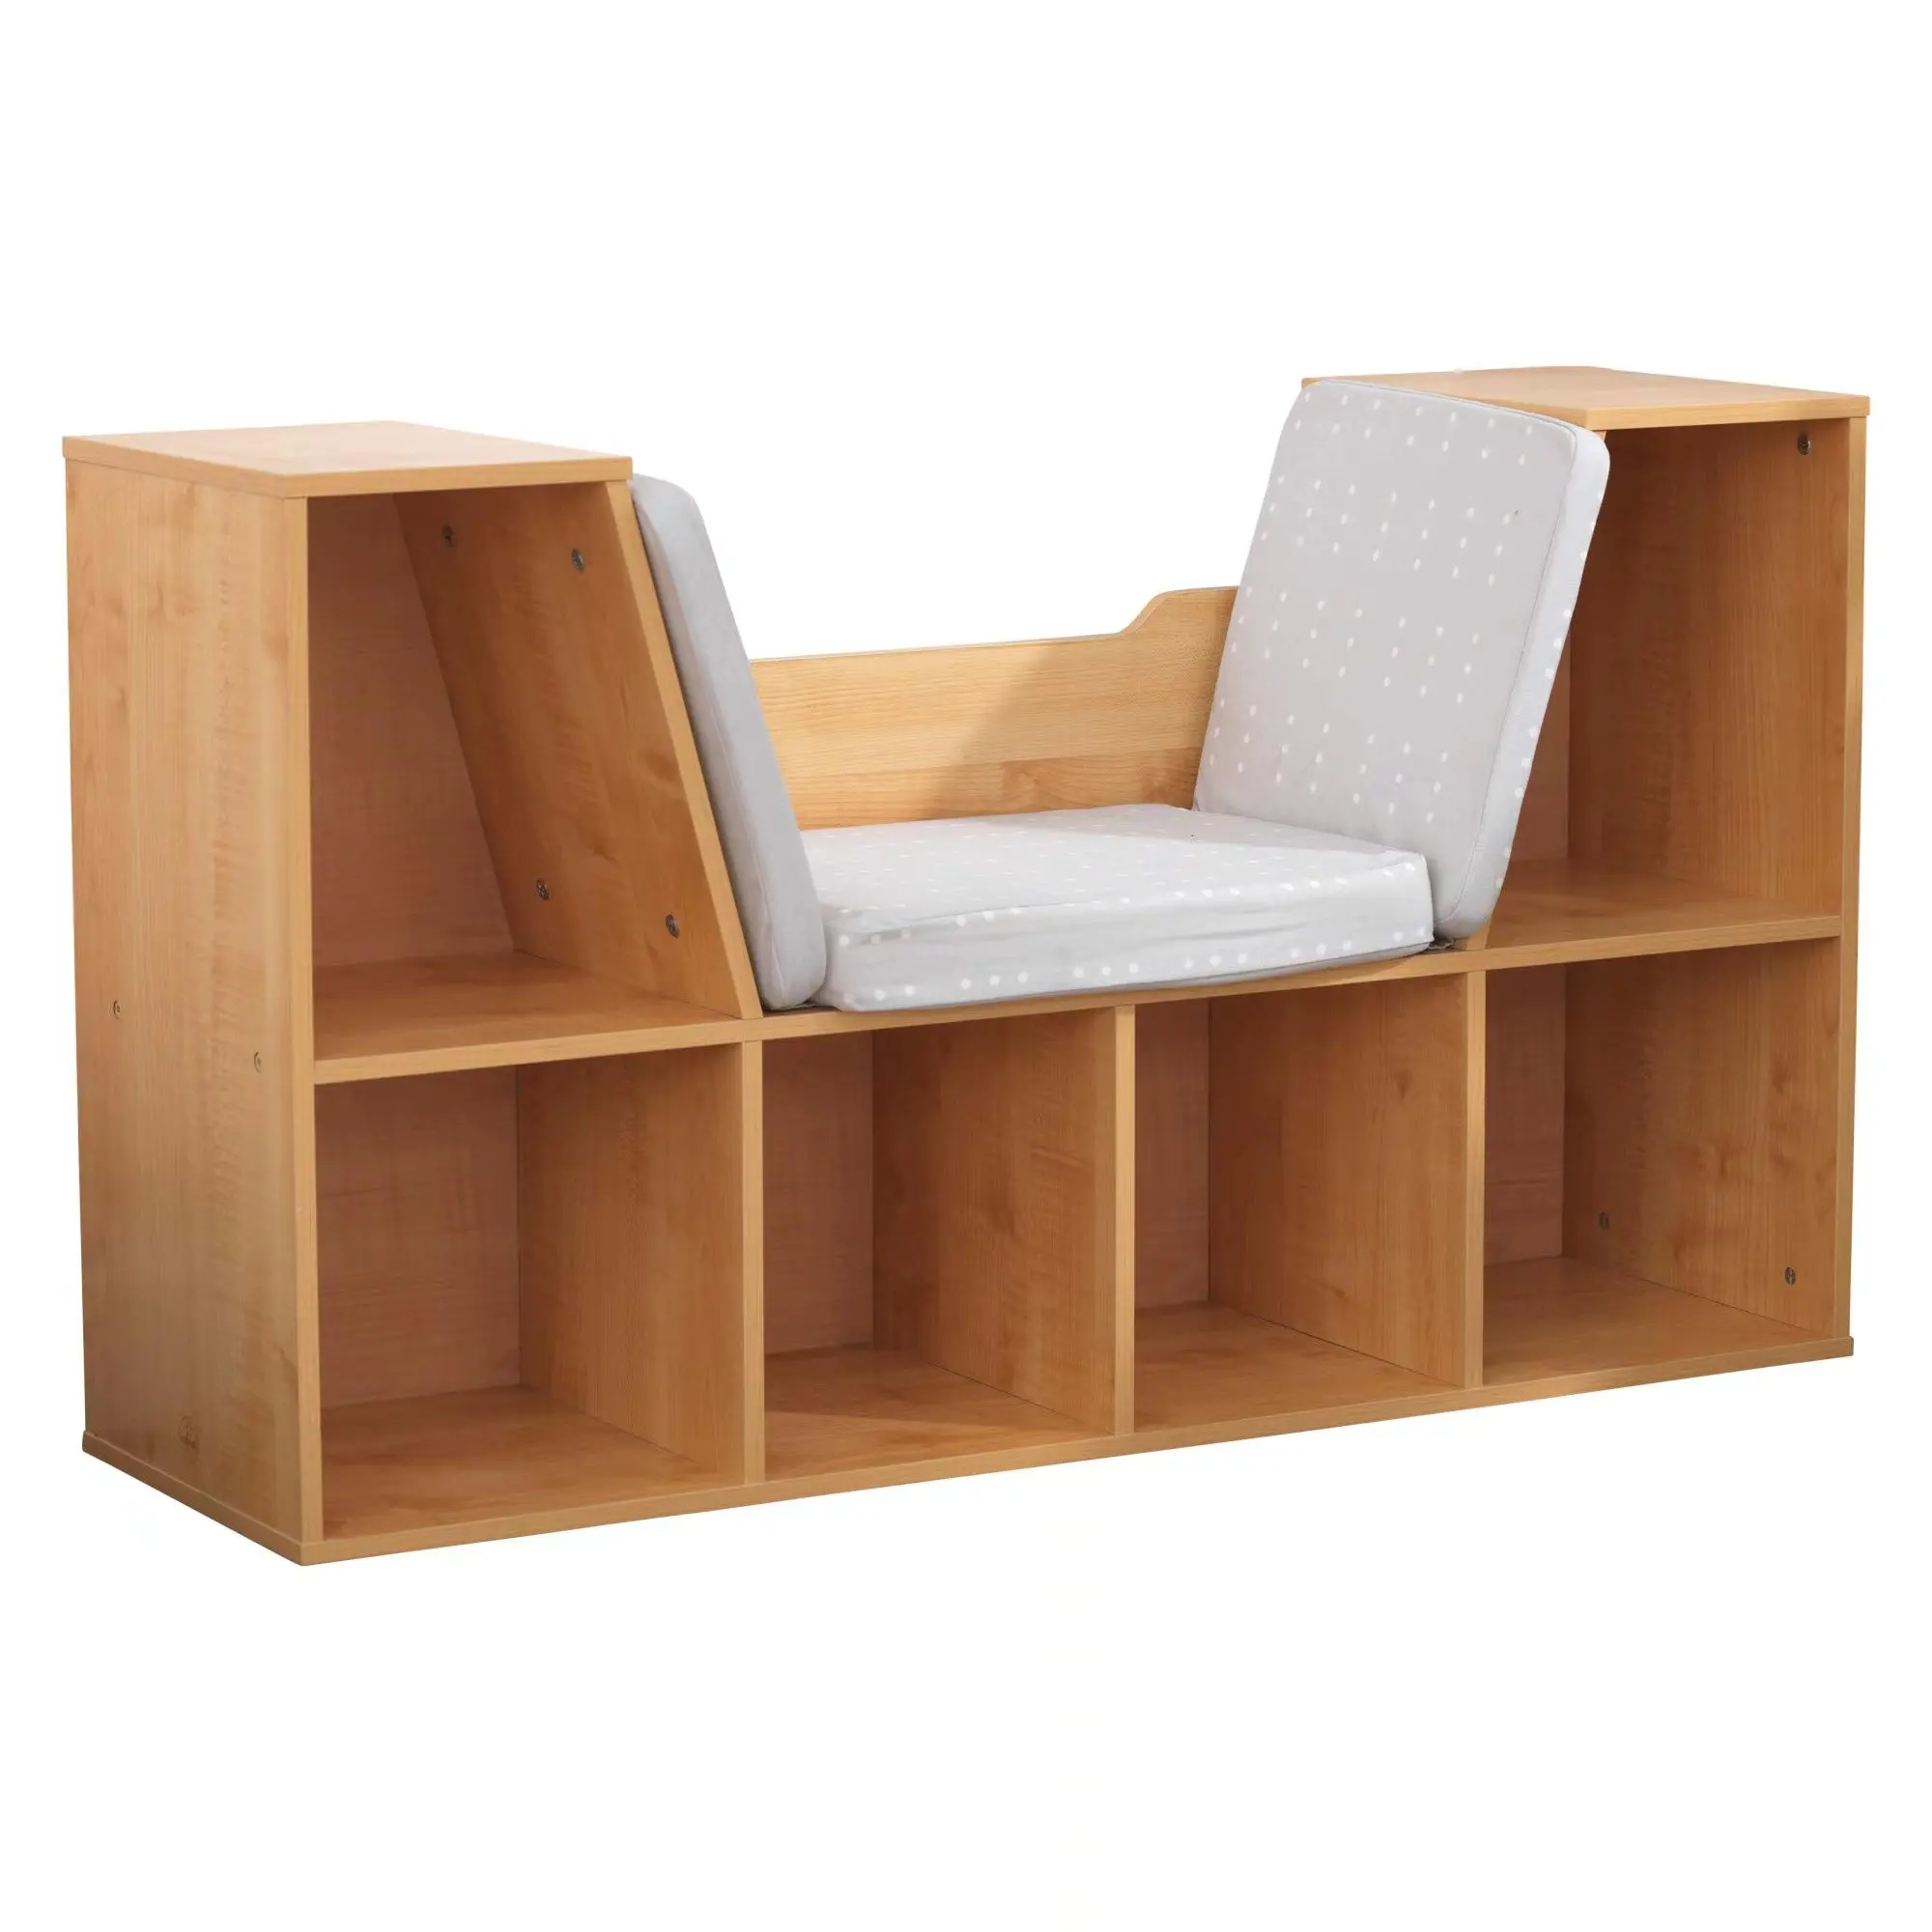 Organizador de almacenamiento de libros de madera, estante de exhibición, estantería con cojín de asiento, práctico y moderno, novedad